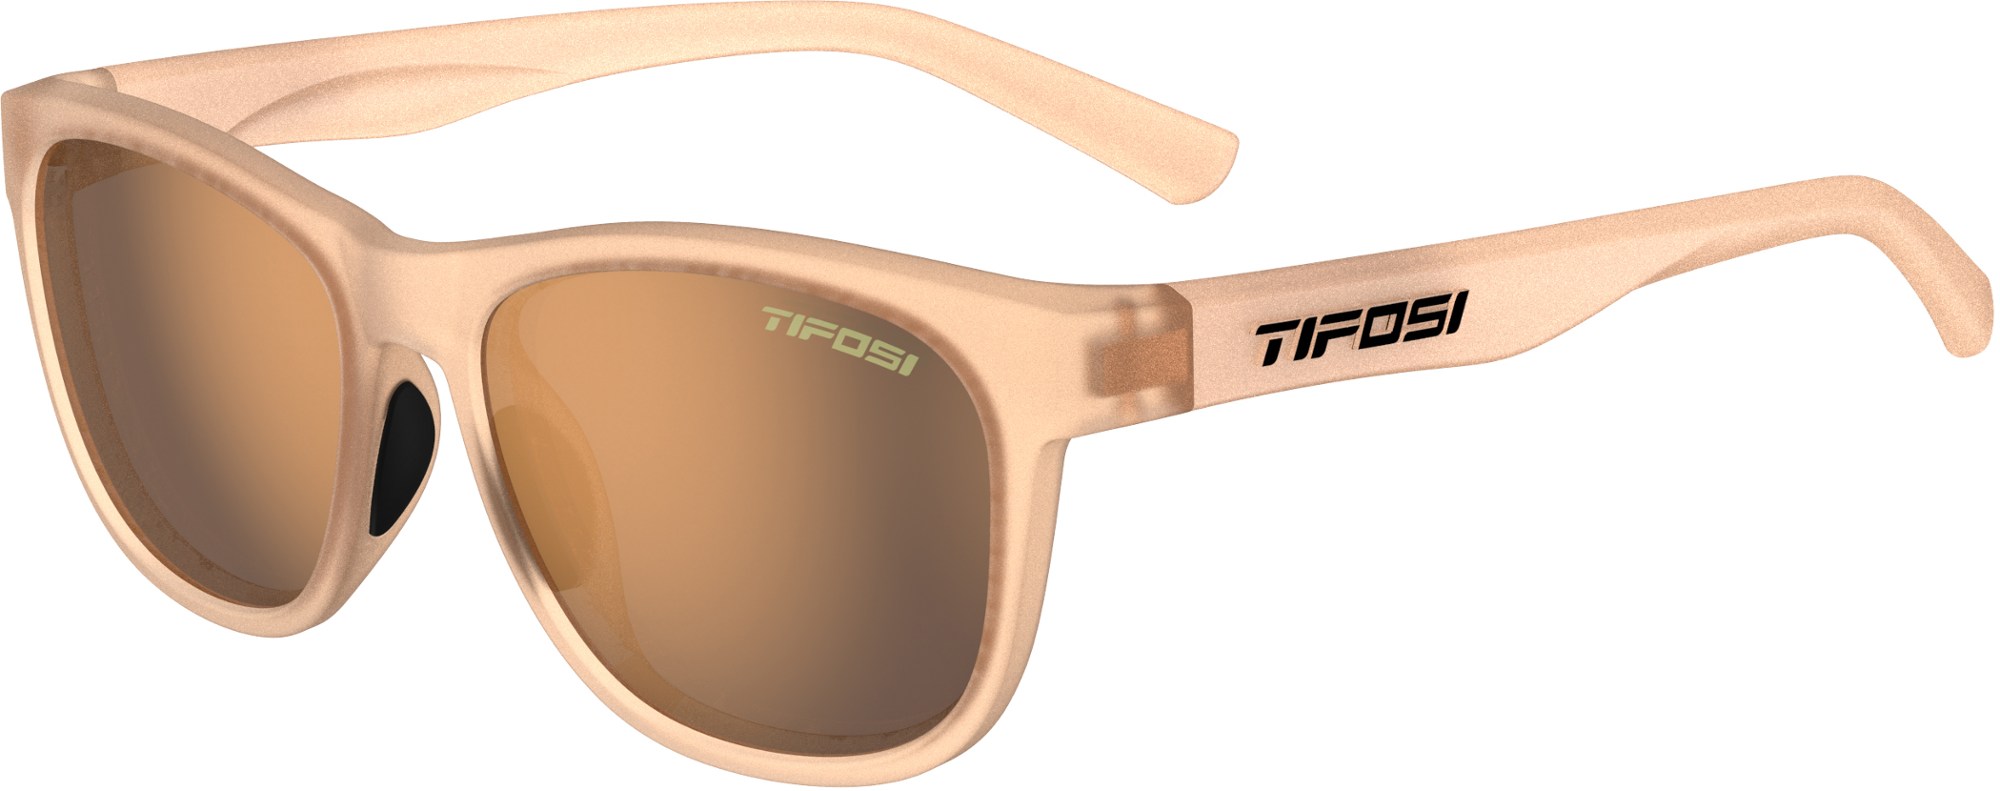 Поляризованные солнцезащитные очки Swank Tifosi, коричневый